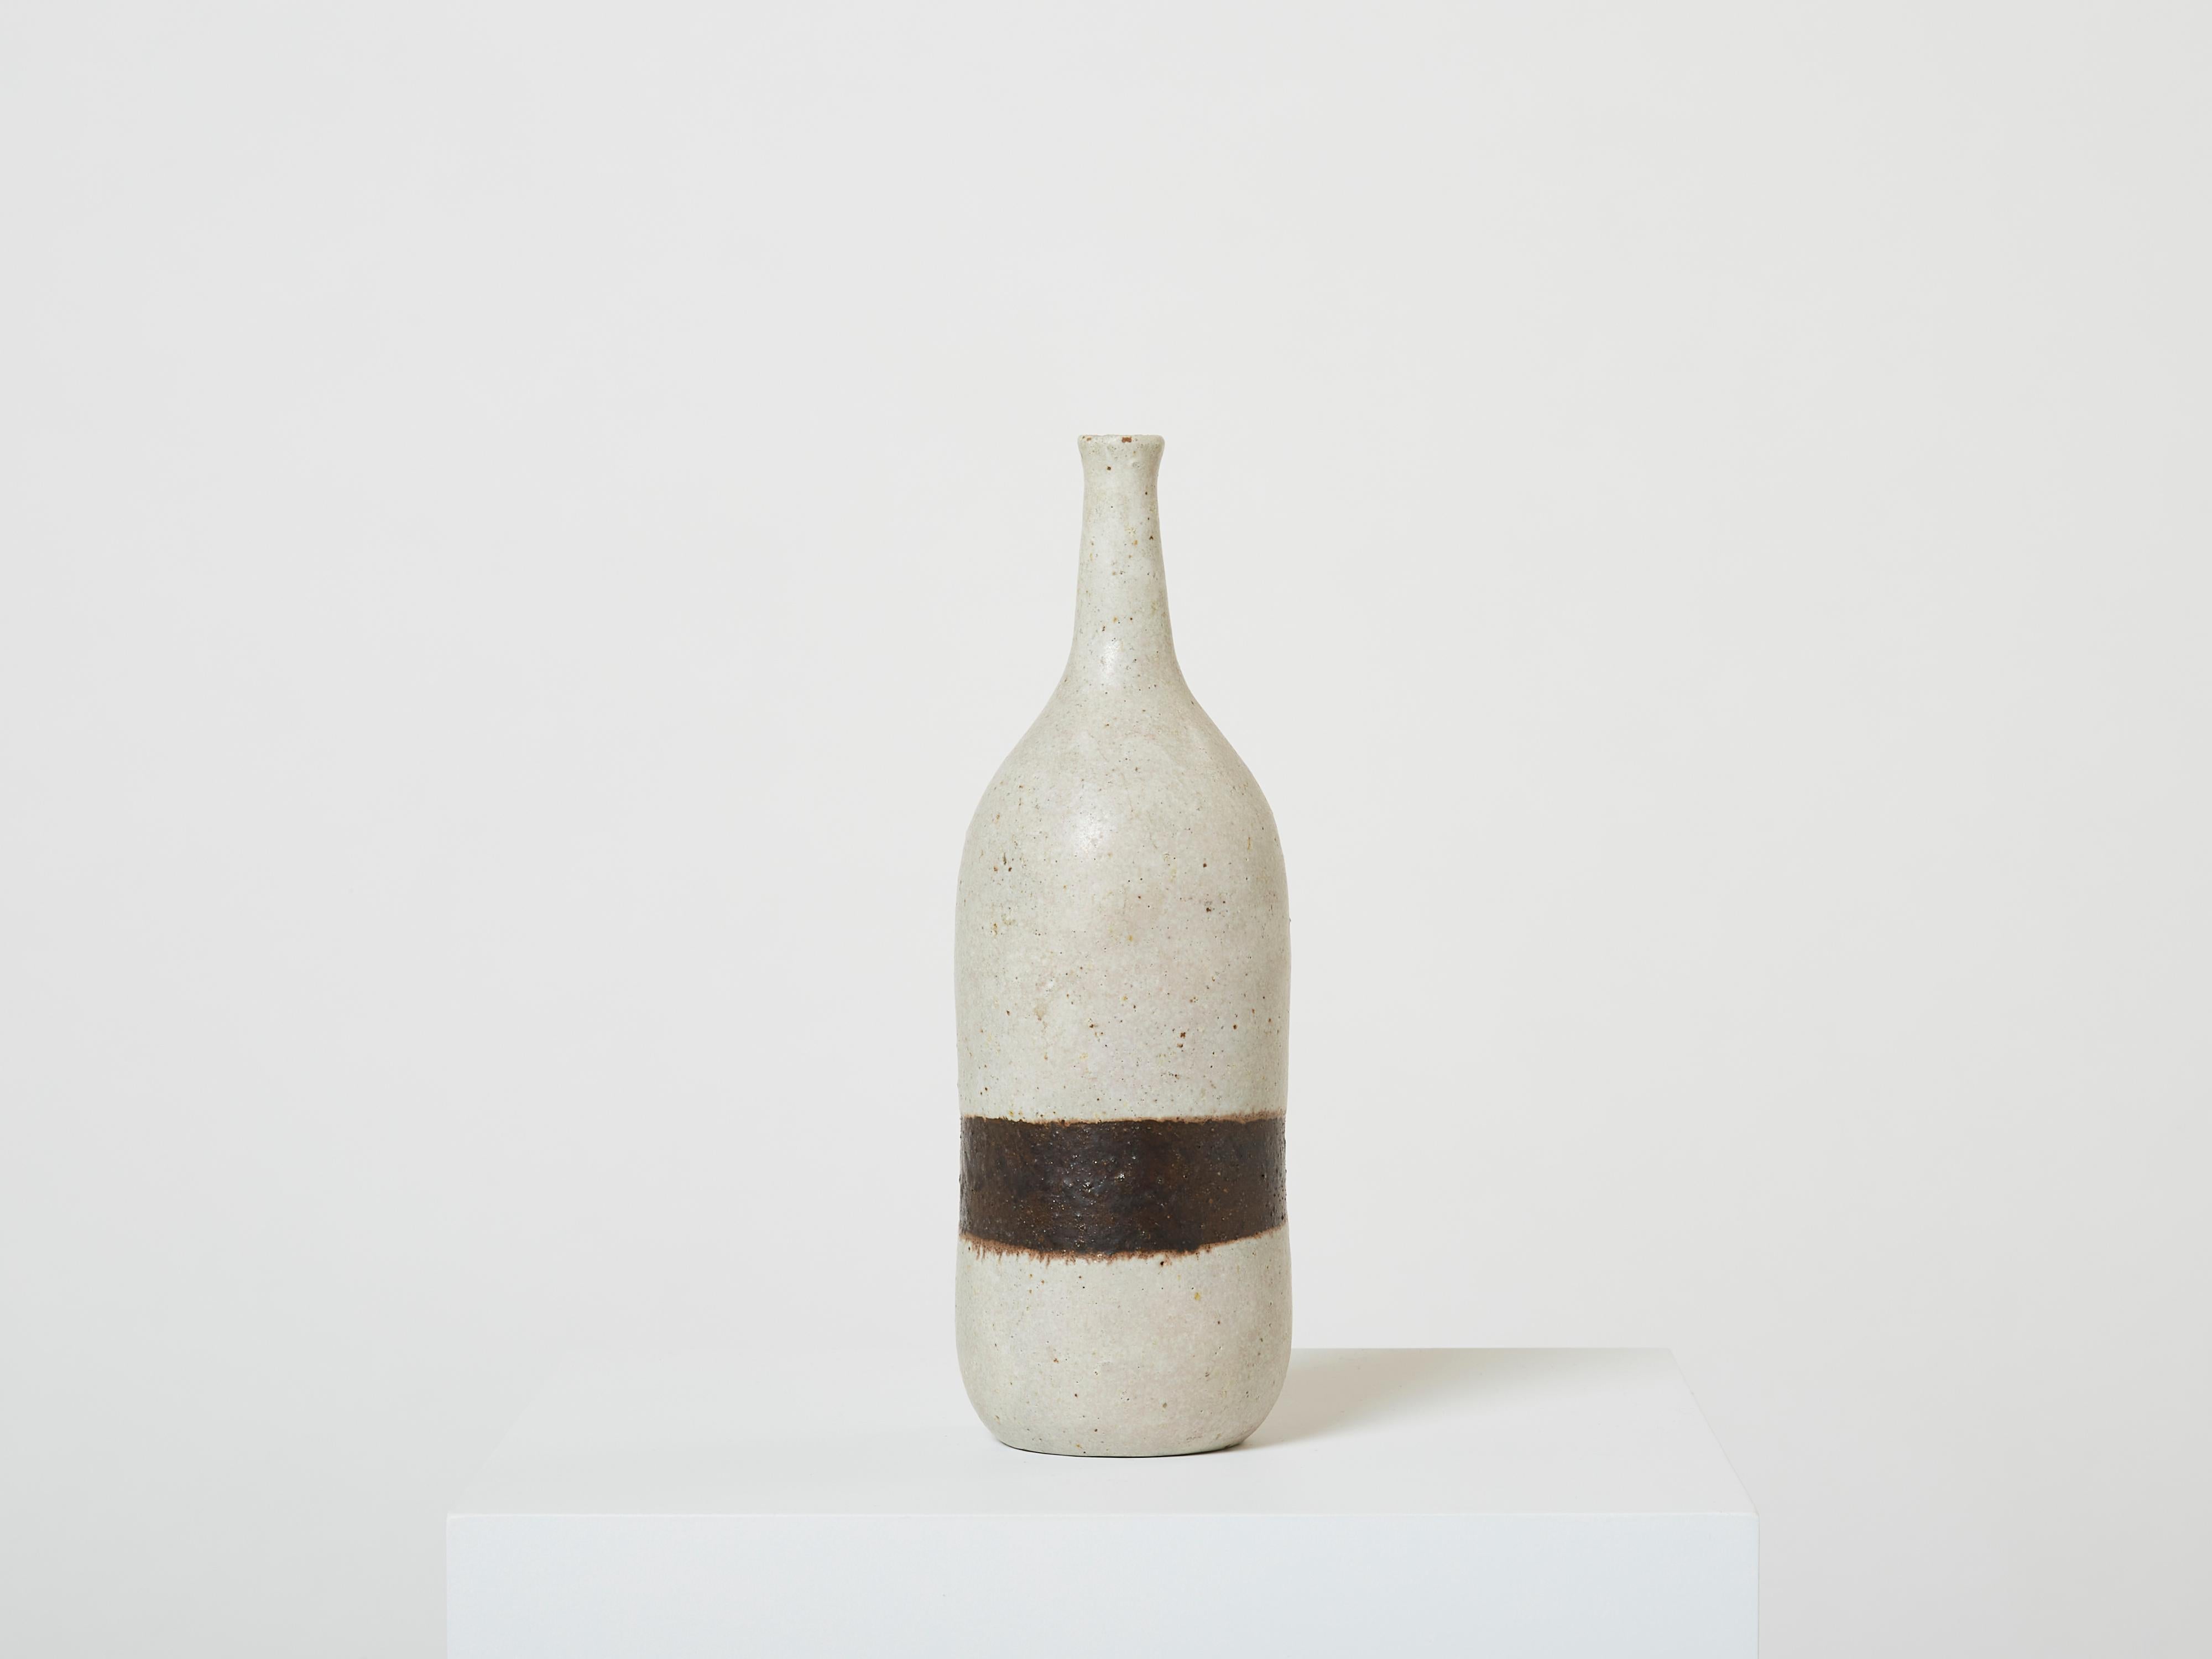 Schöne Bruno Gambone grau glasierte Steingut Keramik einzelne Blume Vase, flaschenförmig, in der Mitte der 1970er Jahre gemacht. Diese schöne Vase ist typisch für das minimalistische Design von Bruno Gambone, mit einer einzigen braunen Linie. Bruno